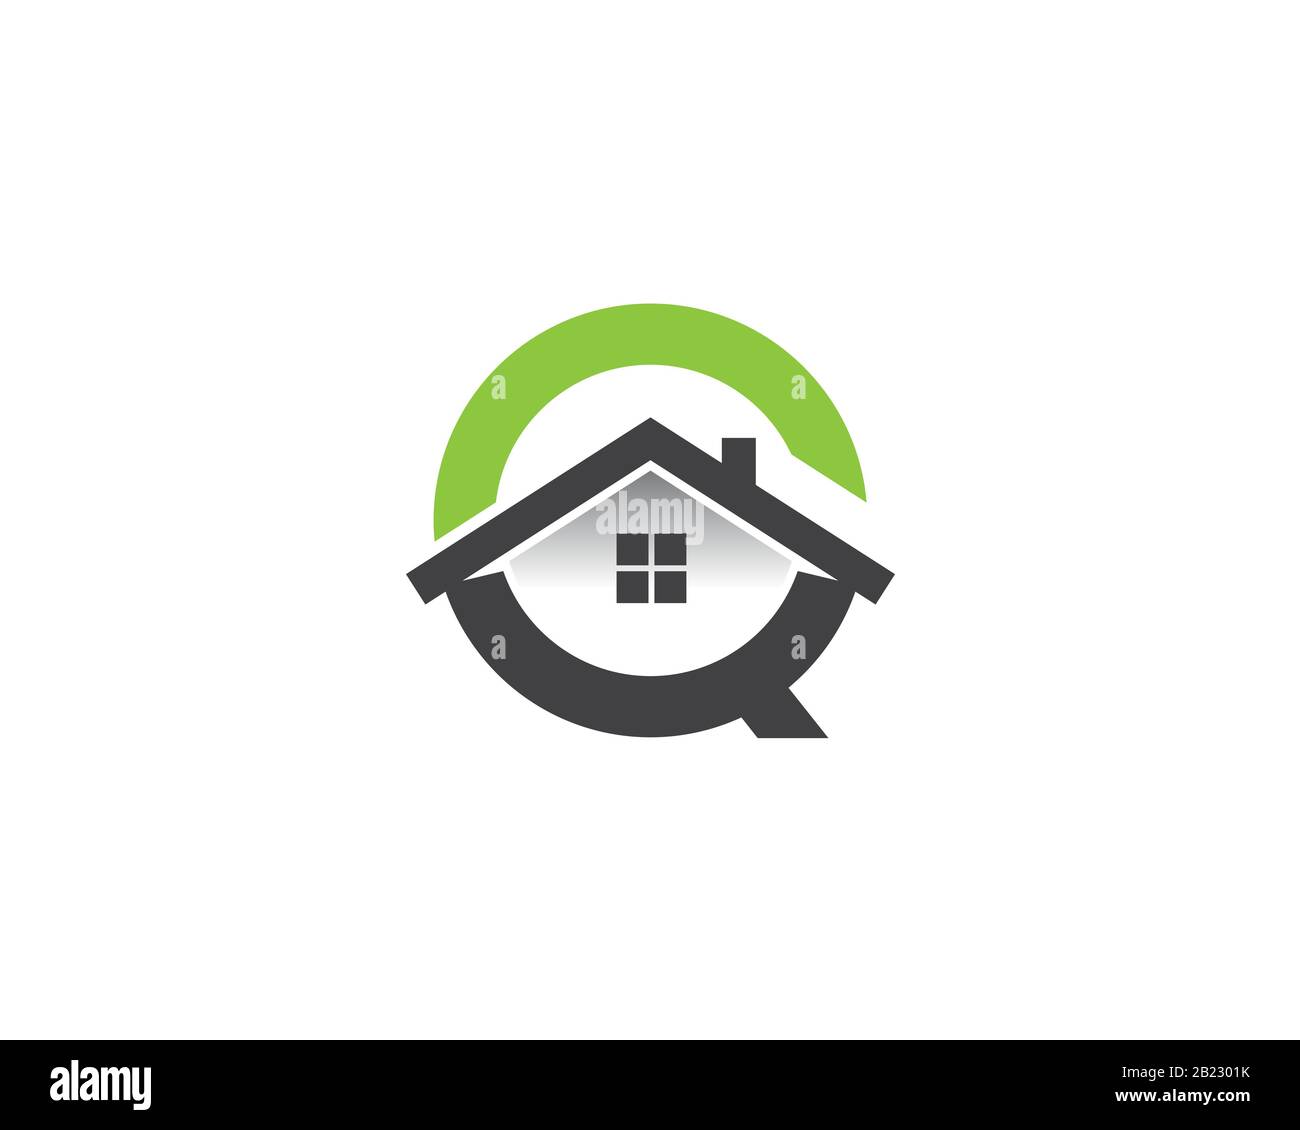 Monogramma anagramma logo lettermark della lettera C o Q con finestra del tetto e casa all'interno Illustrazione Vettoriale